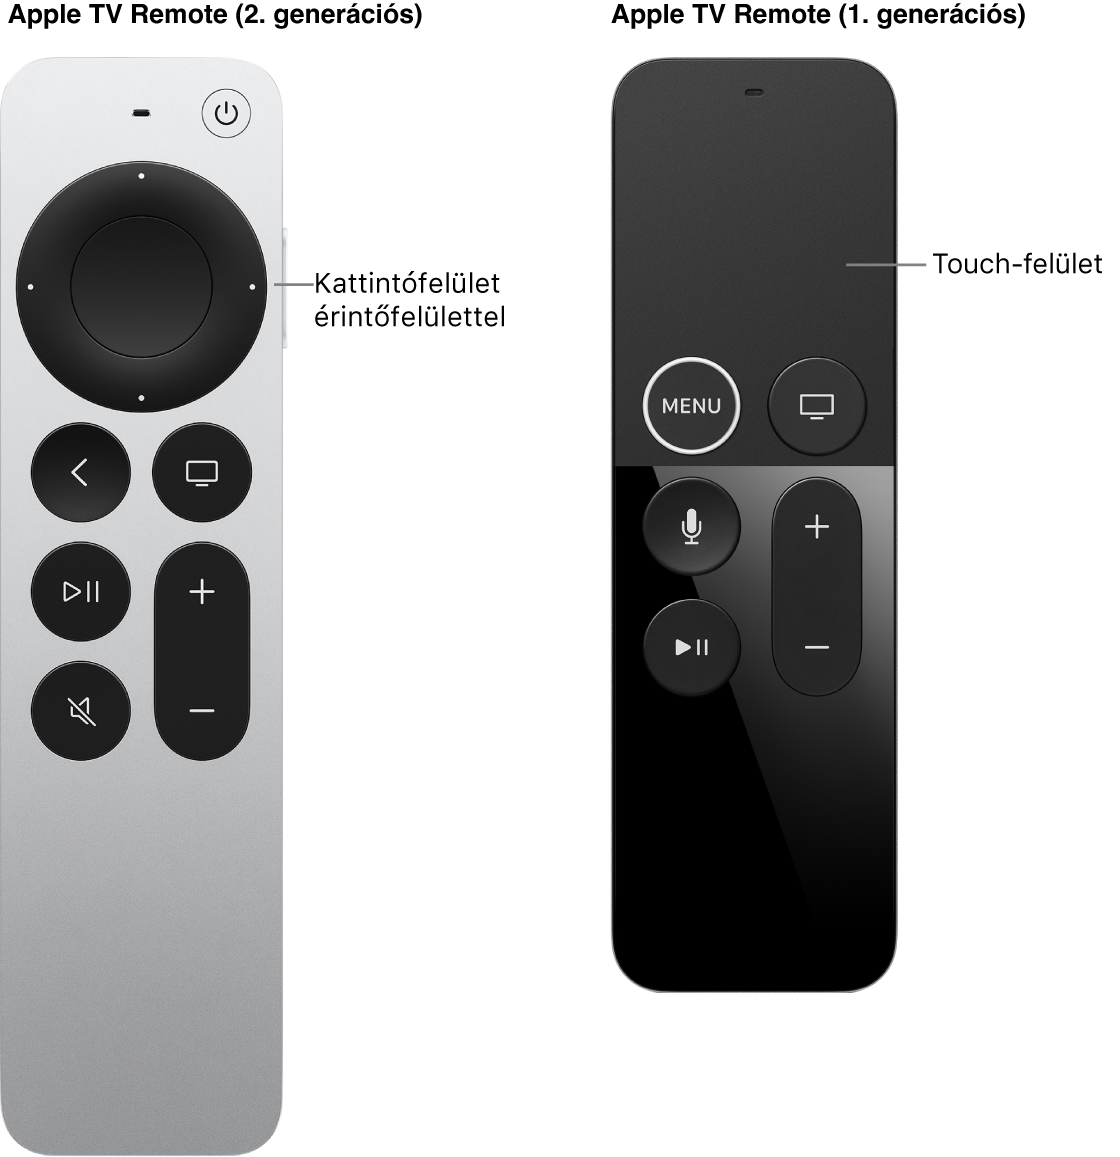 A kattintófelülettel ellátott Apple TV Remote (2. generációs) és az érintőfelülettel ellátott Apple TV Remote (1. generációs)